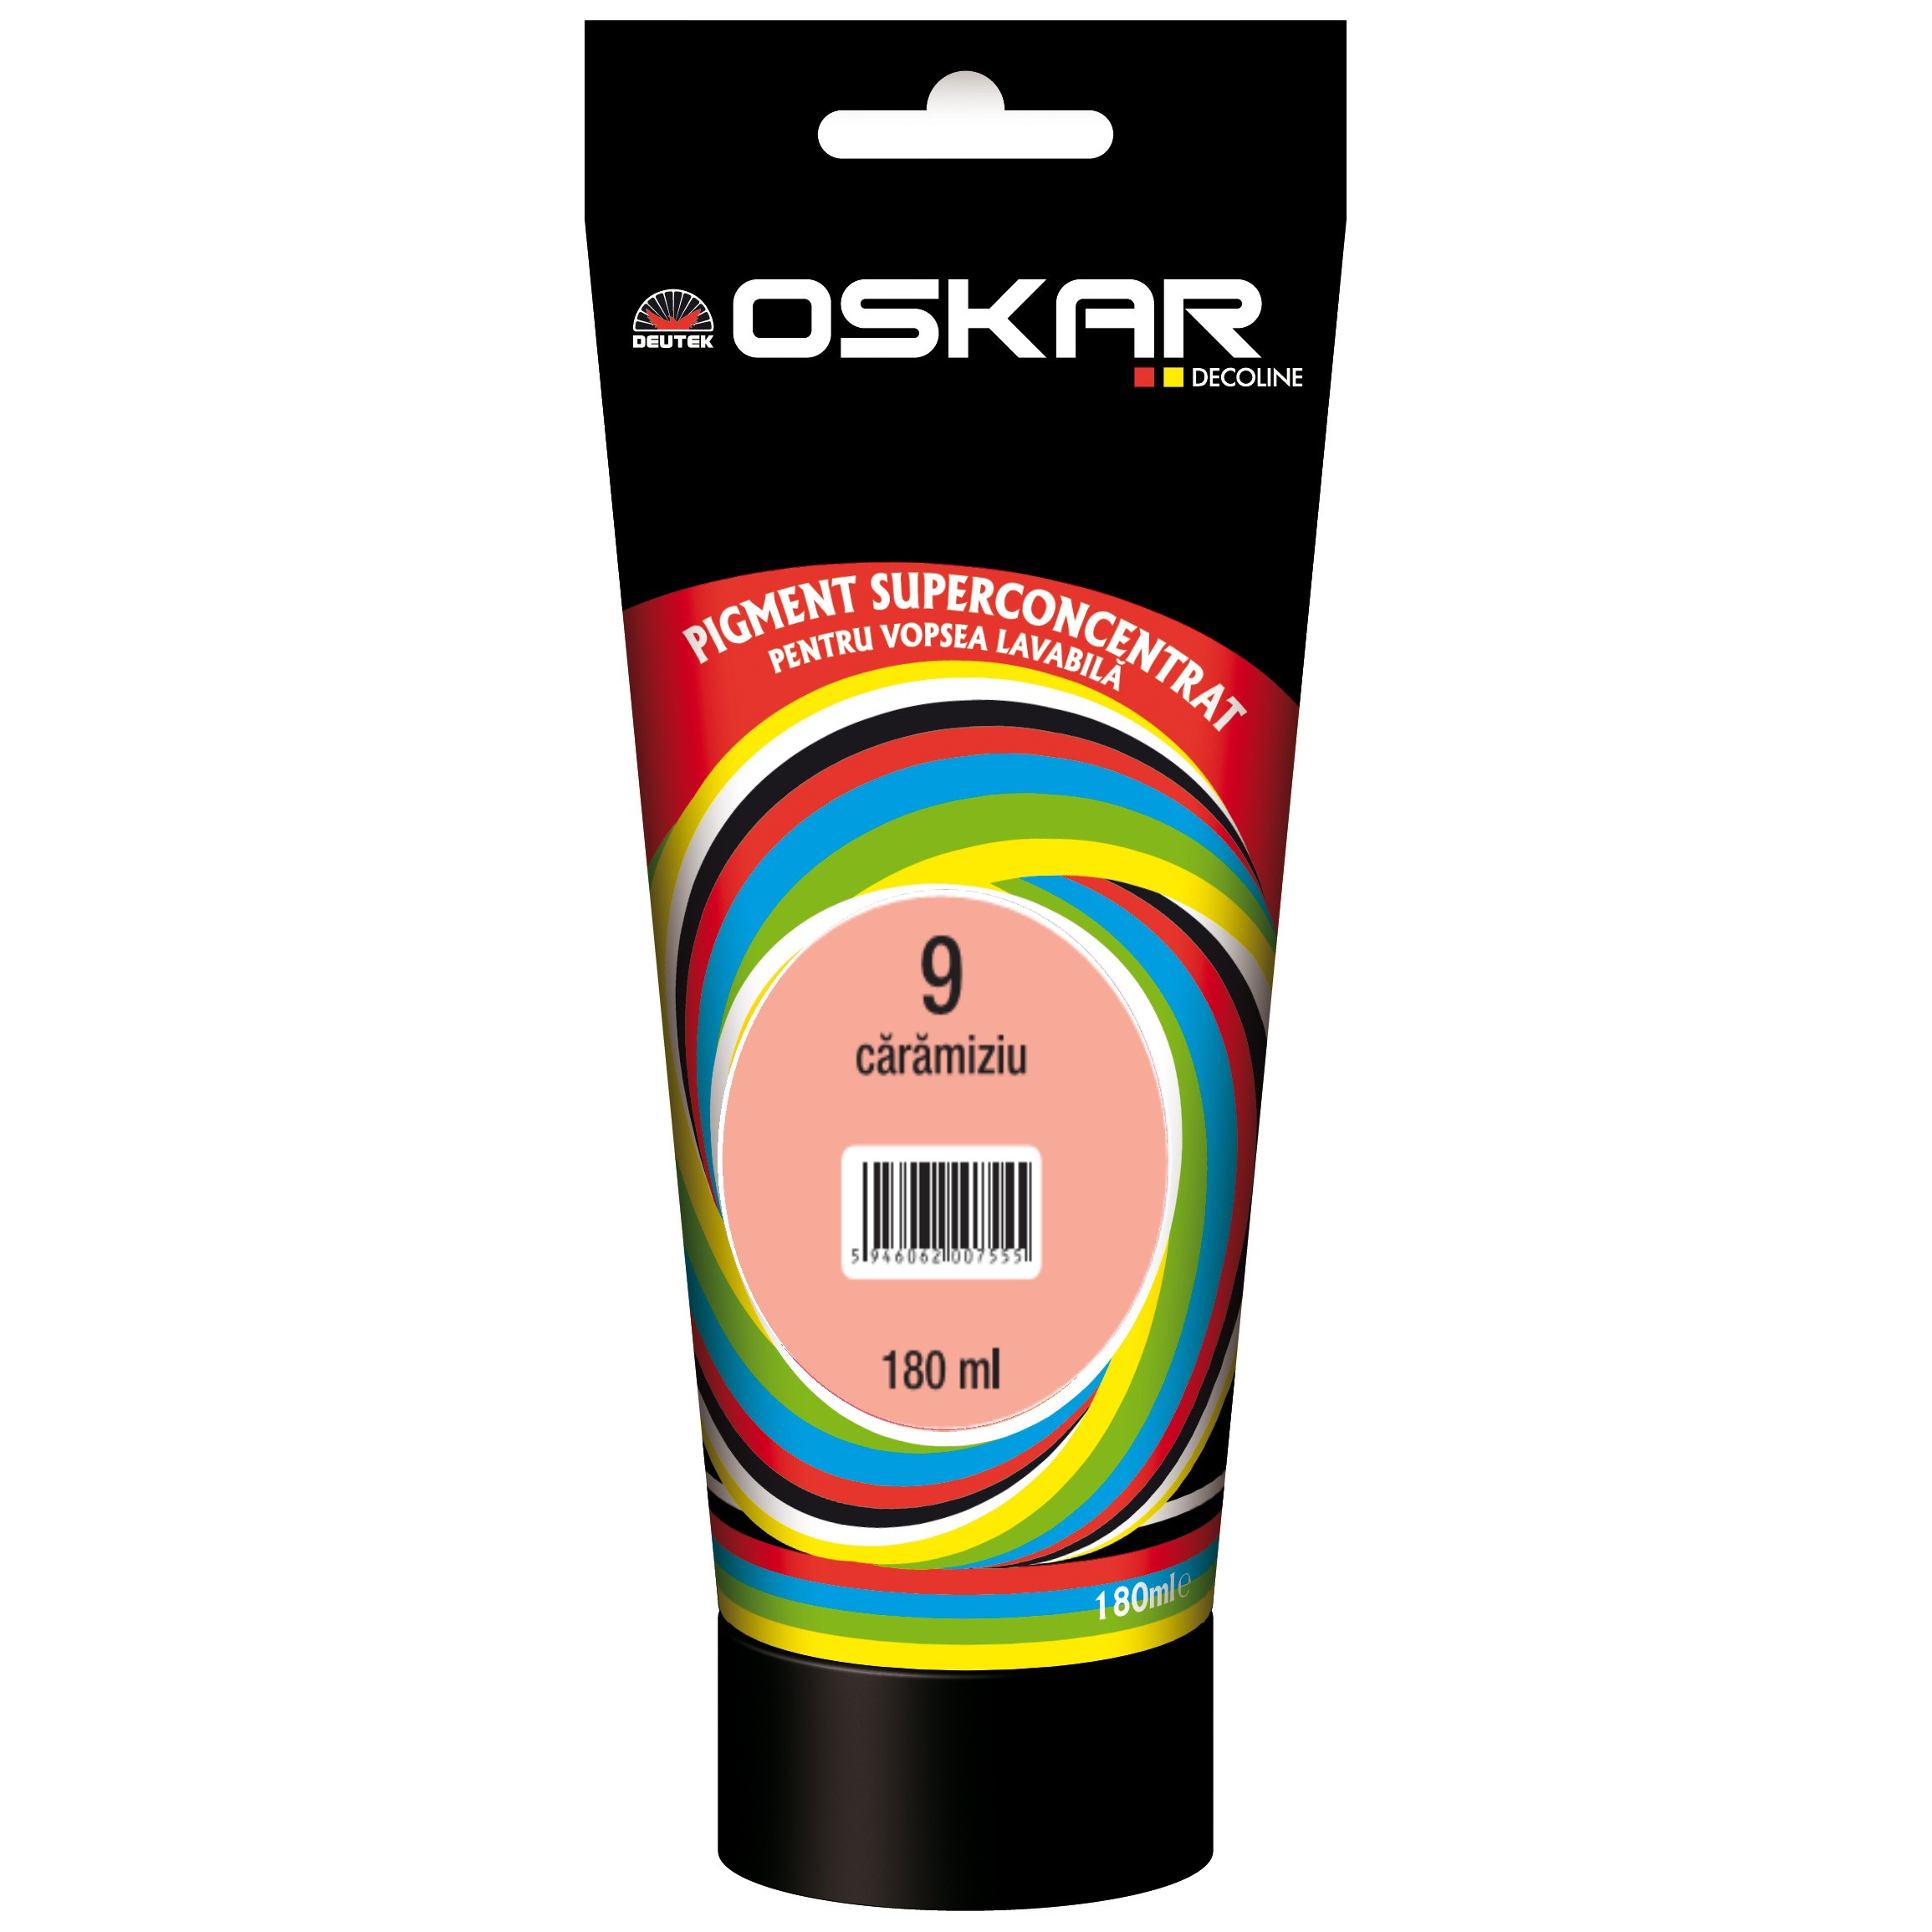 Pigment Oskar pentru vopsea lavabila 9 caramiziu 180 ml